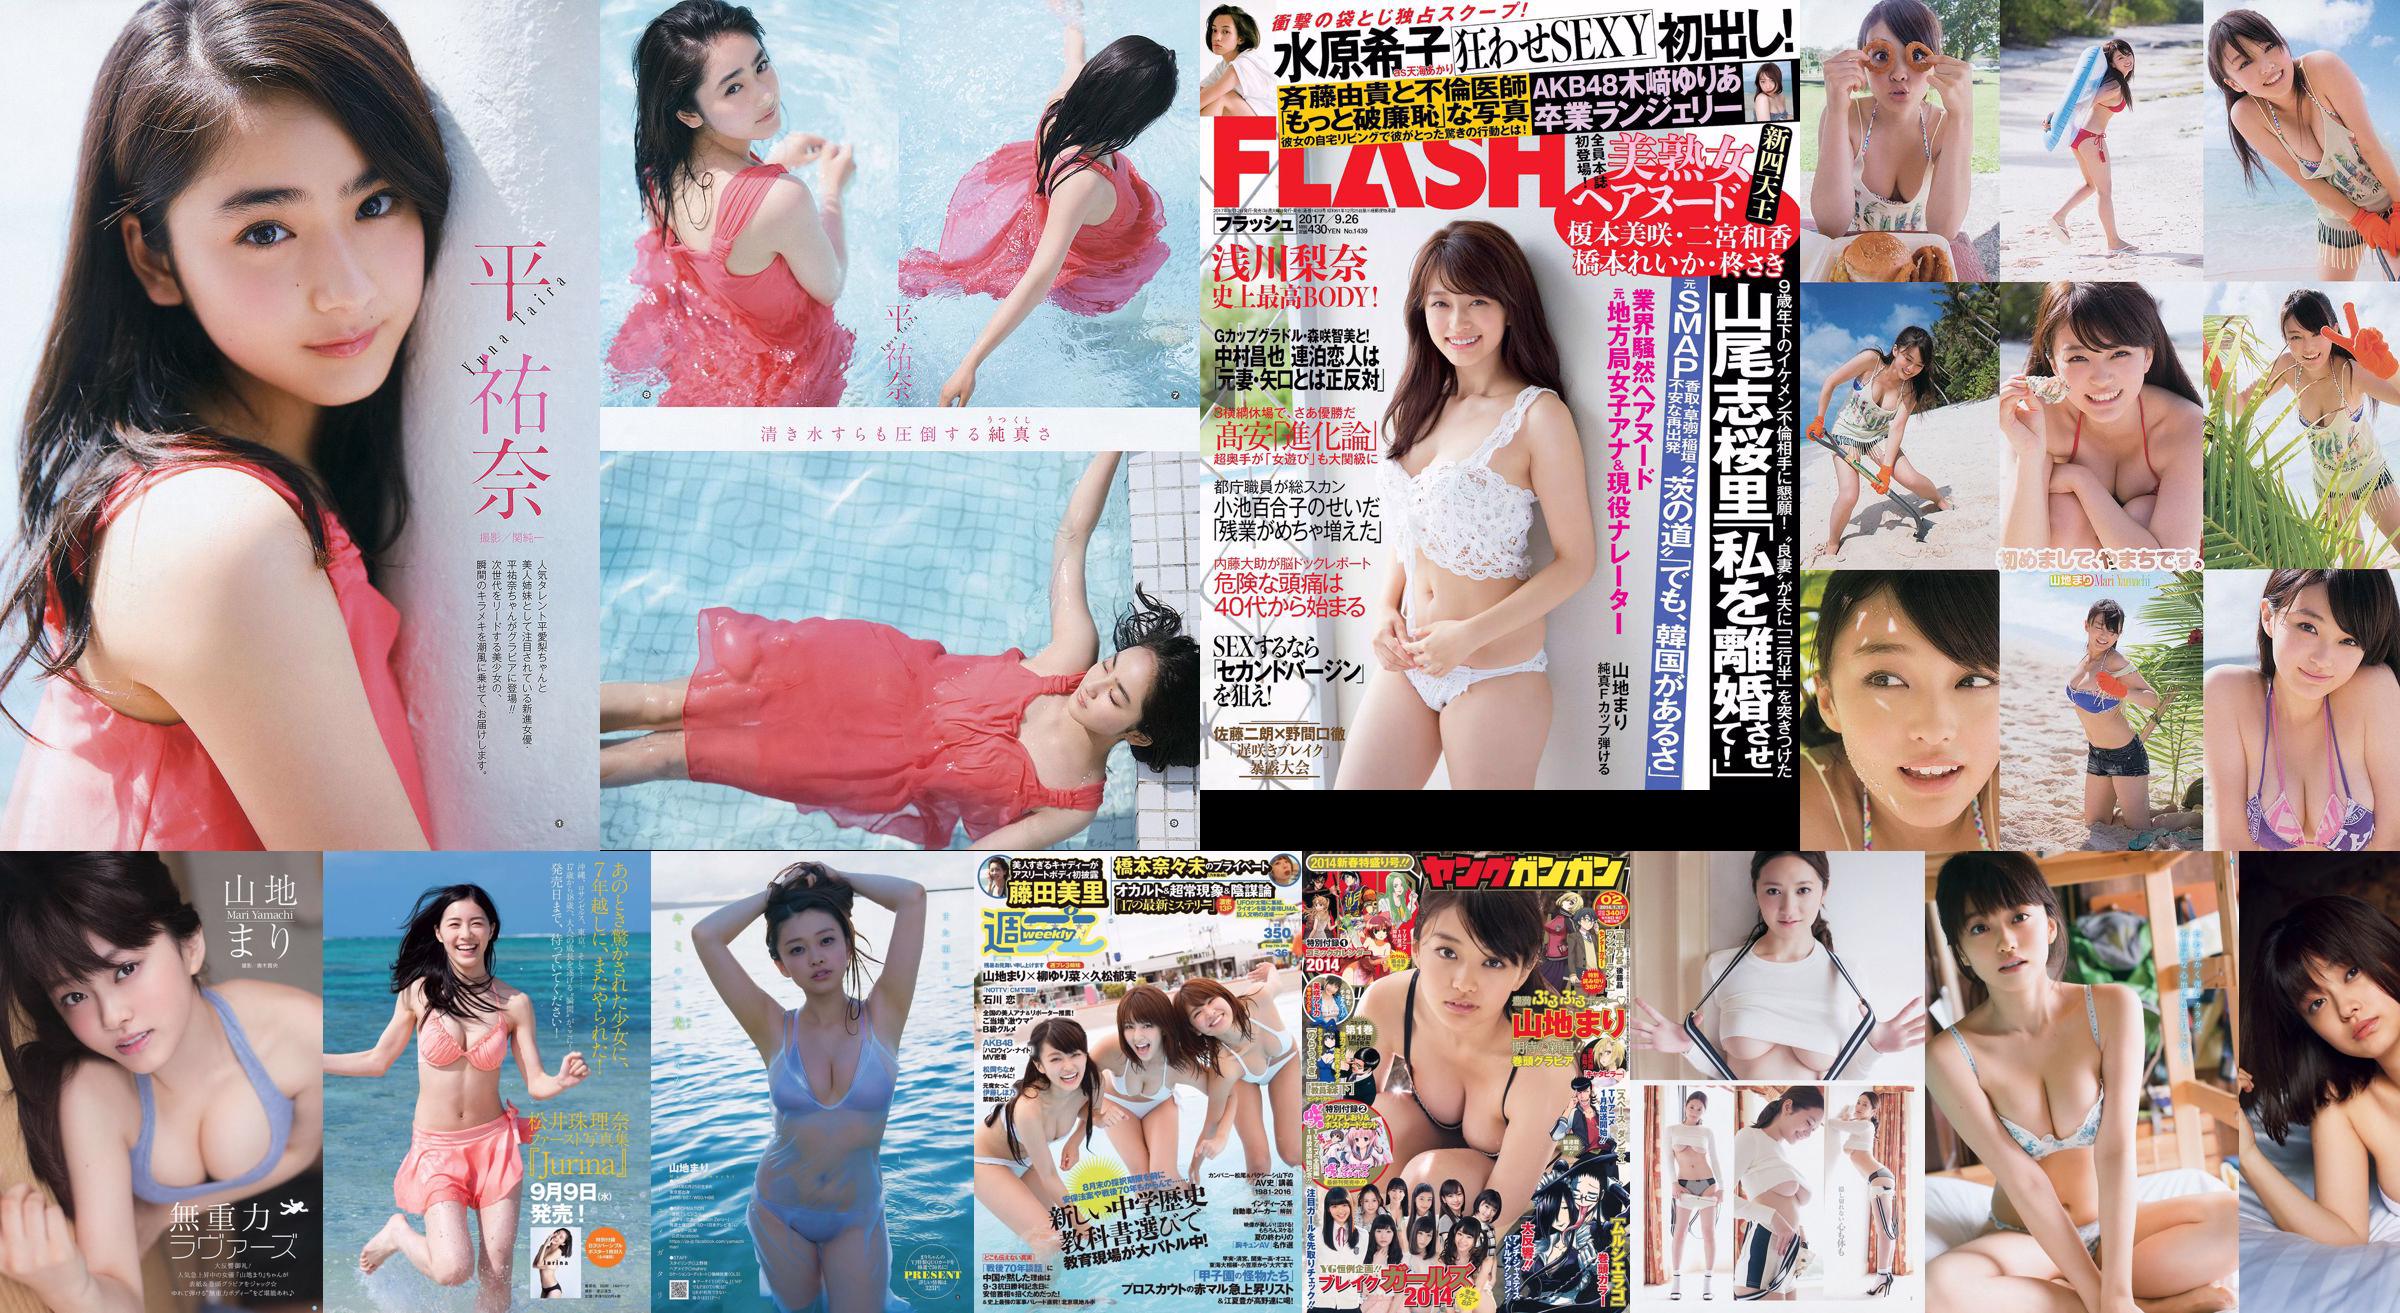 Montagna Mari Matsumoto Erika Tang Tian Erika Shionji Misumi Takahashi Noce Watanabe Miyuki [Weekly Playboy] 2016 No.30 Photo Magazine No.d8b134 Pagina 1